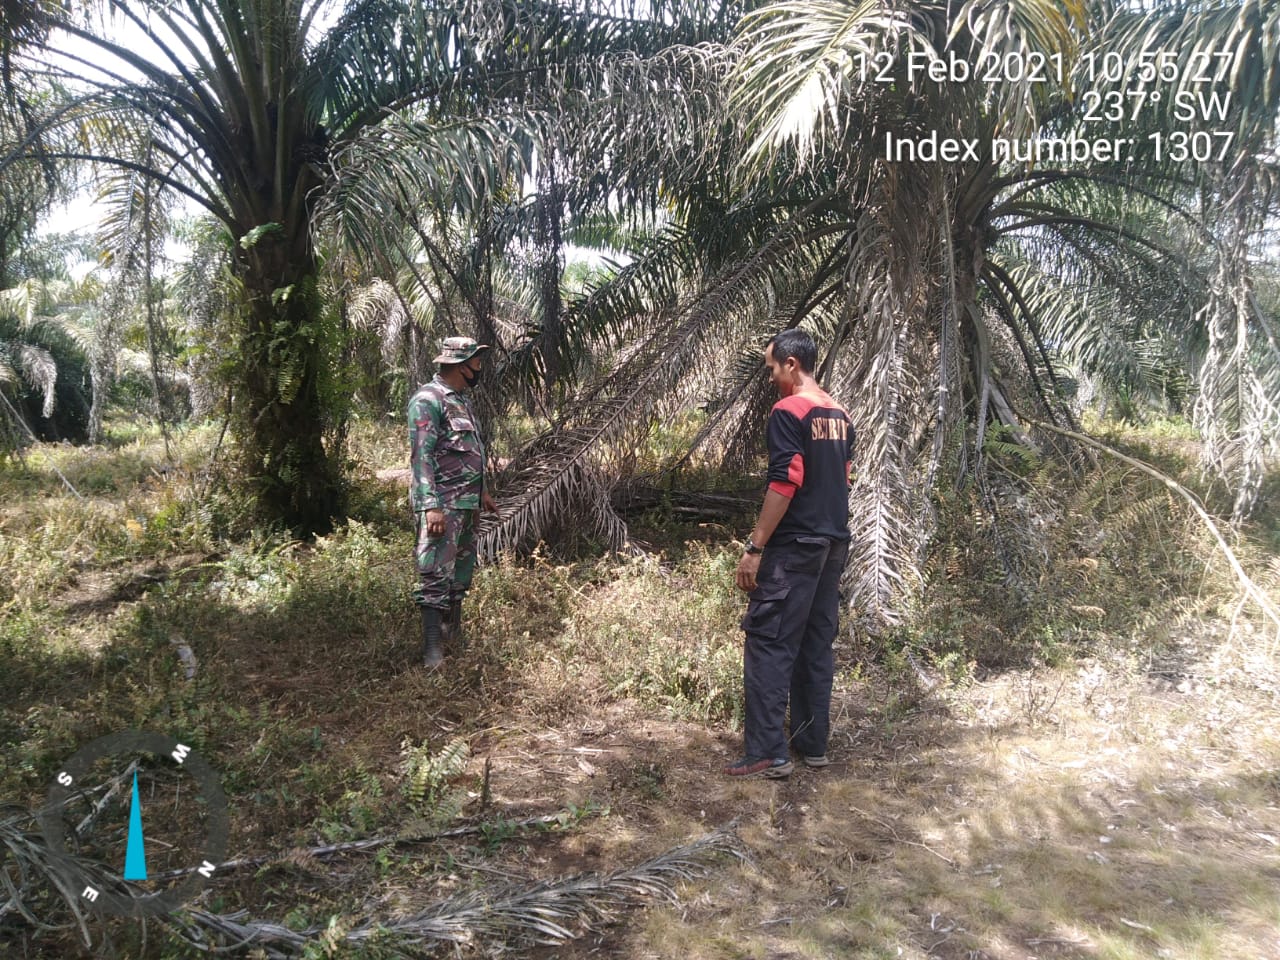 Kopda Saiful Ajak Warga Peduli dan Tidak Membakar Hutan Sembarangan